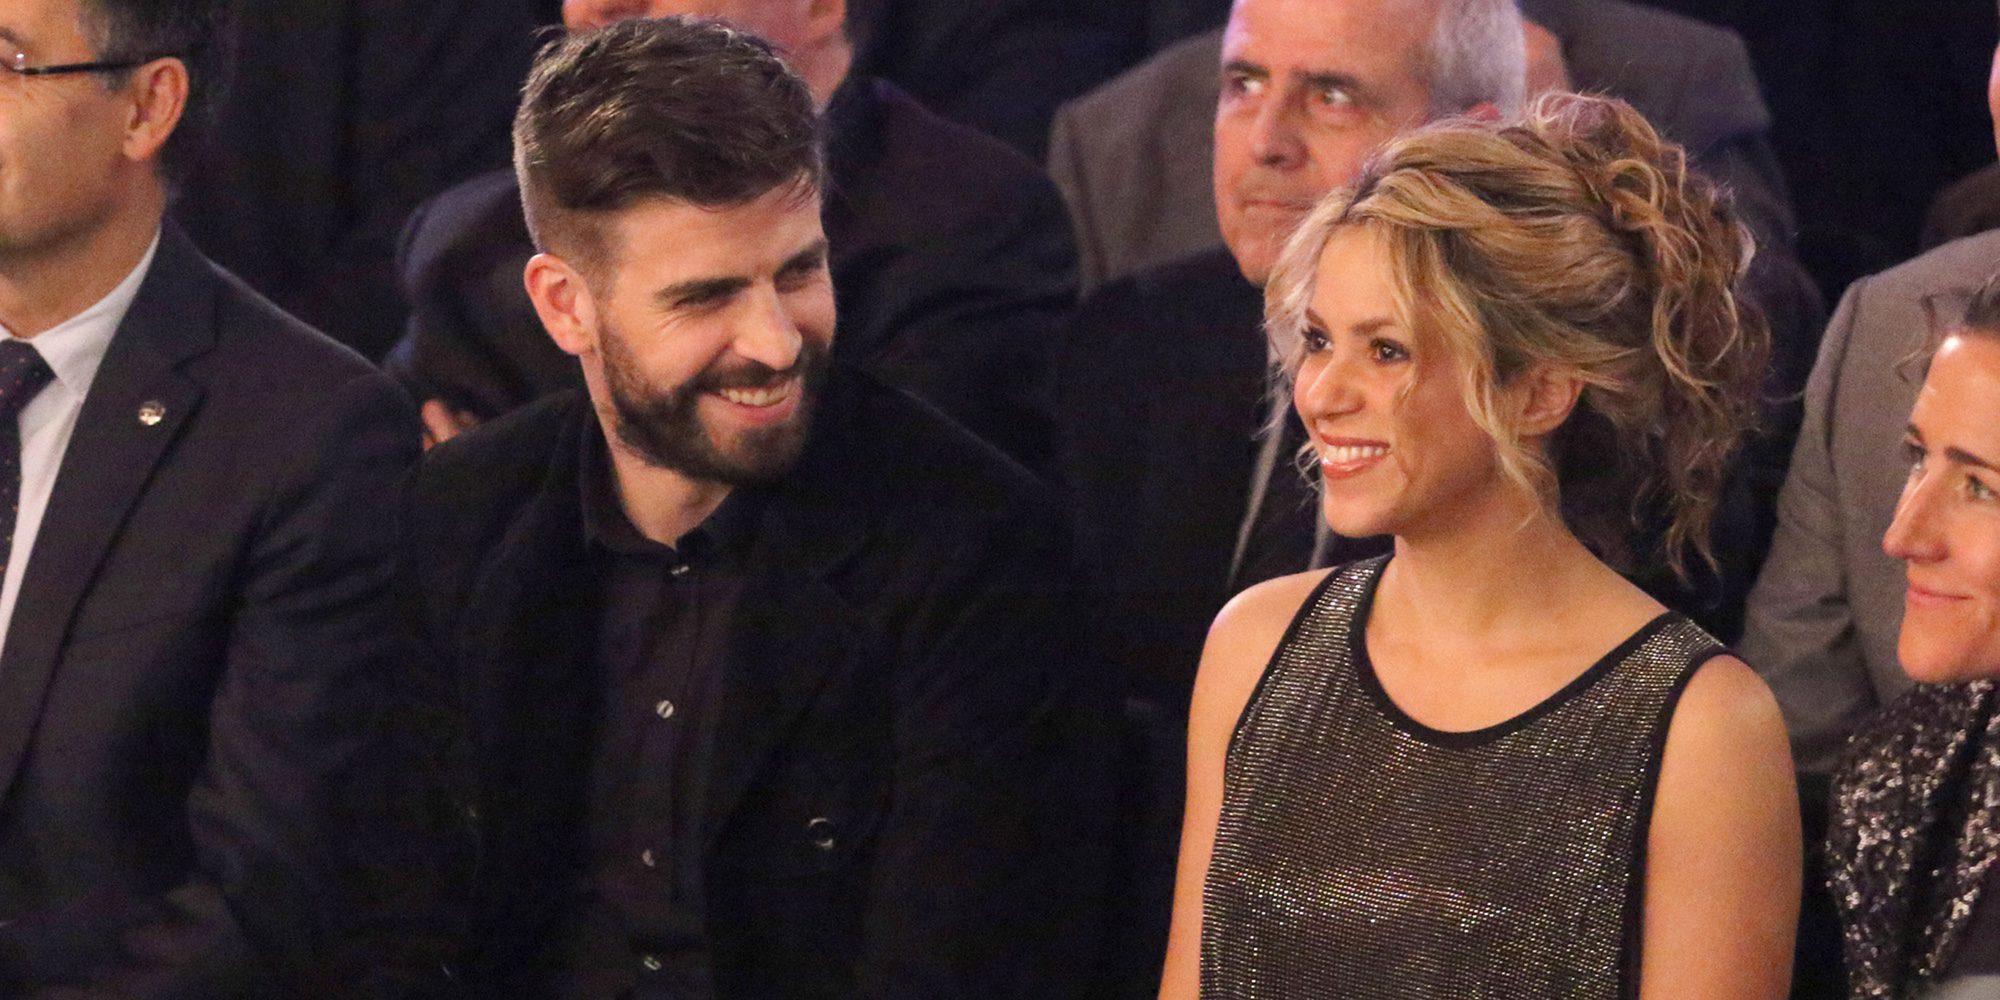 Shakira, loca de amor por Gerard Piqué: "No sé si es que estoy muy enamorada, pero le veo alegre, activo y sensato"